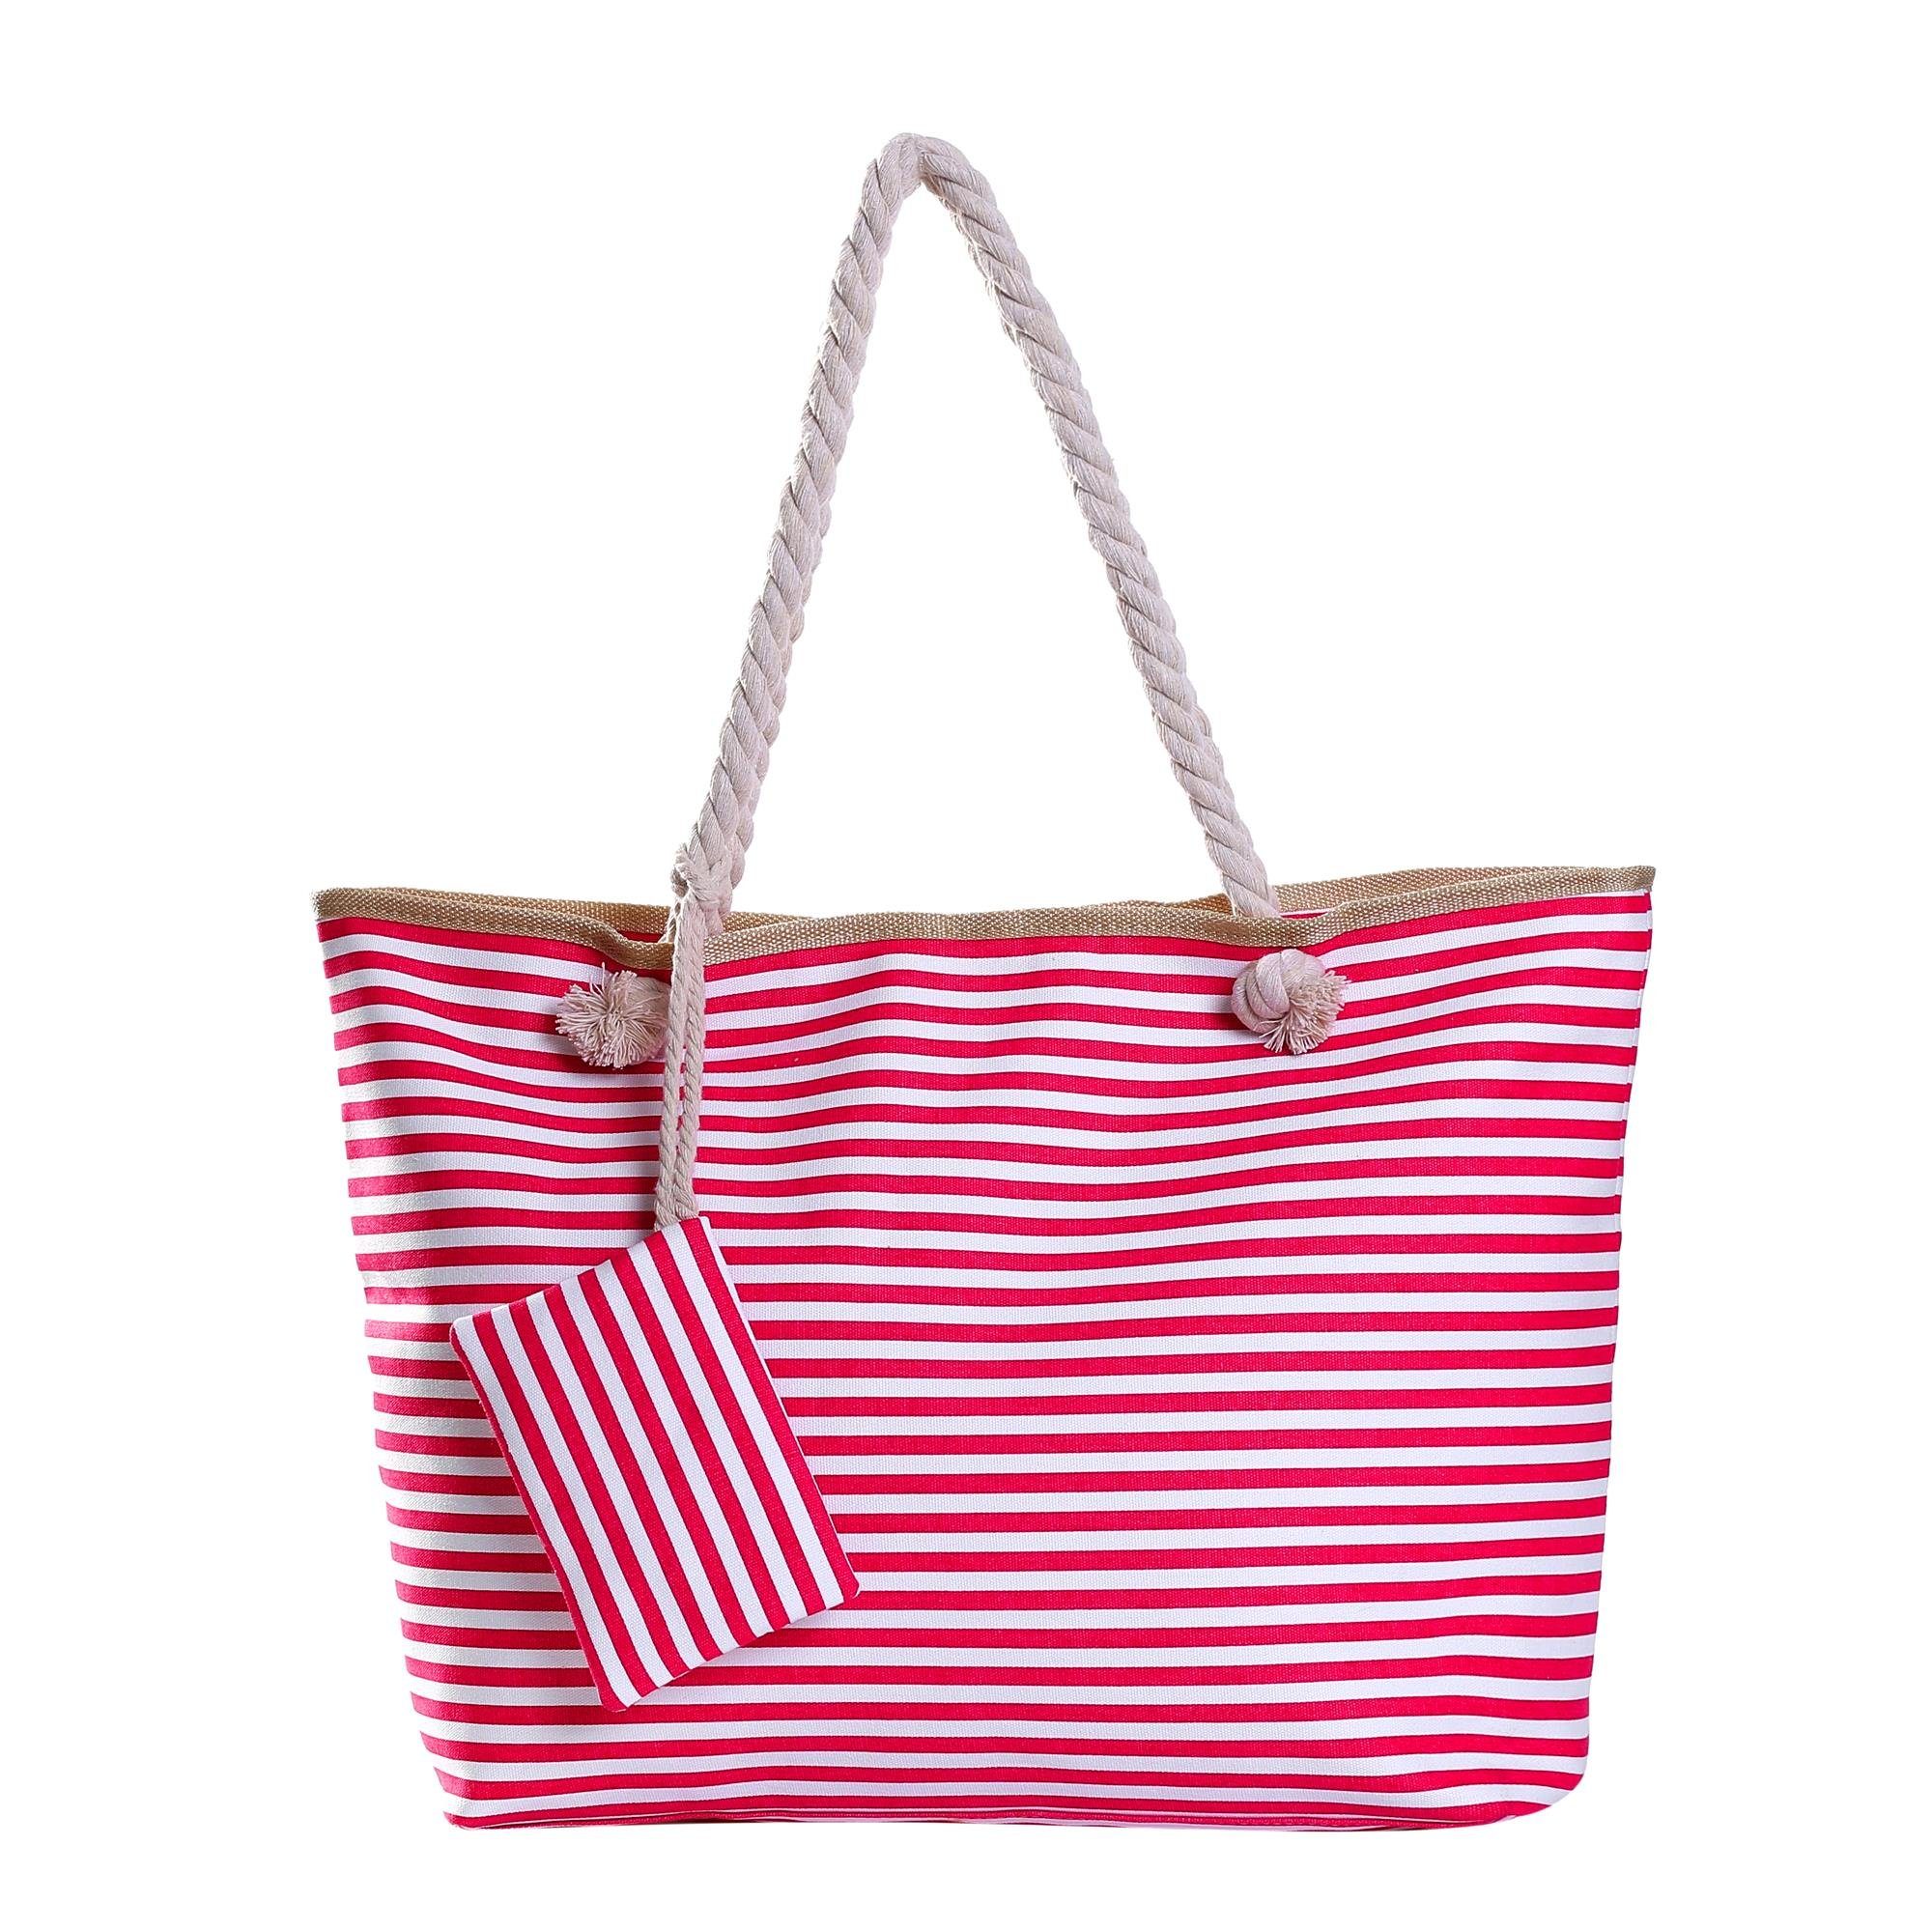 DonDon Strandtasche Shopper wasserabweisende Tasche (2-tlg), Große Strandtasche, mit Reißverschluss, inkl. kleinem Beutel rot-weiß gestreift 2